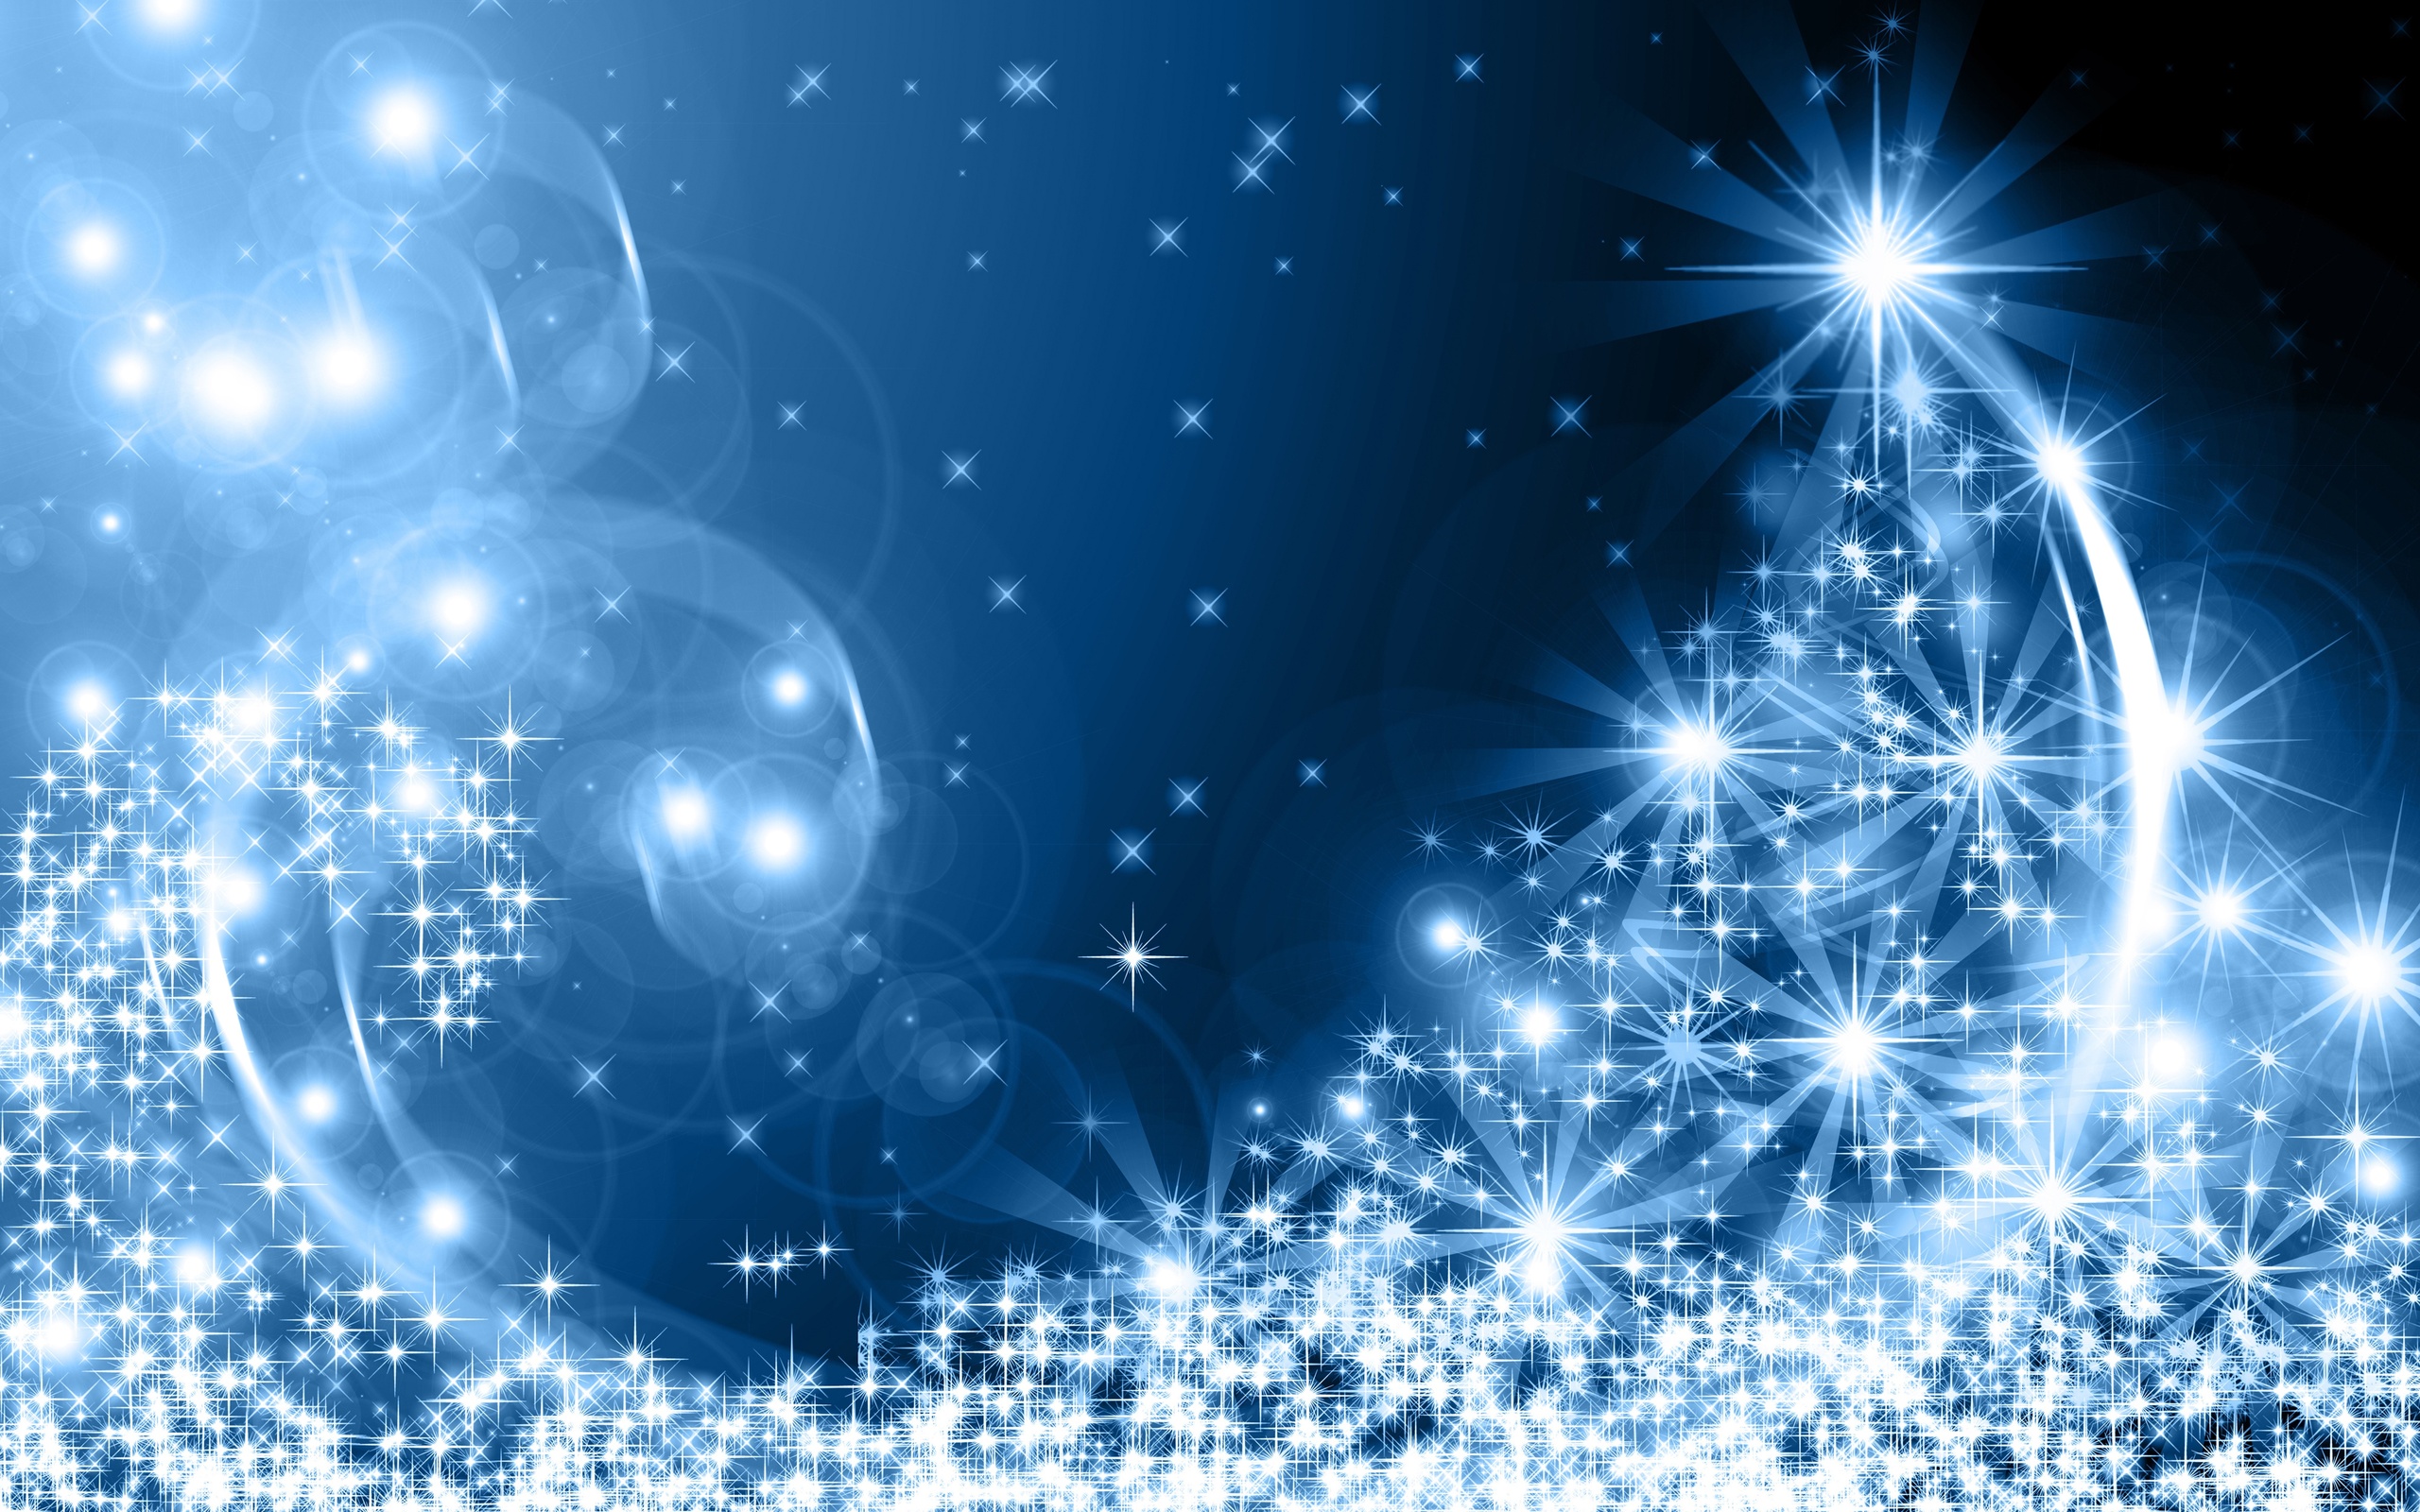 tapete weihnachten,blau,himmel,star,elektrisches blau,astronomisches objekt